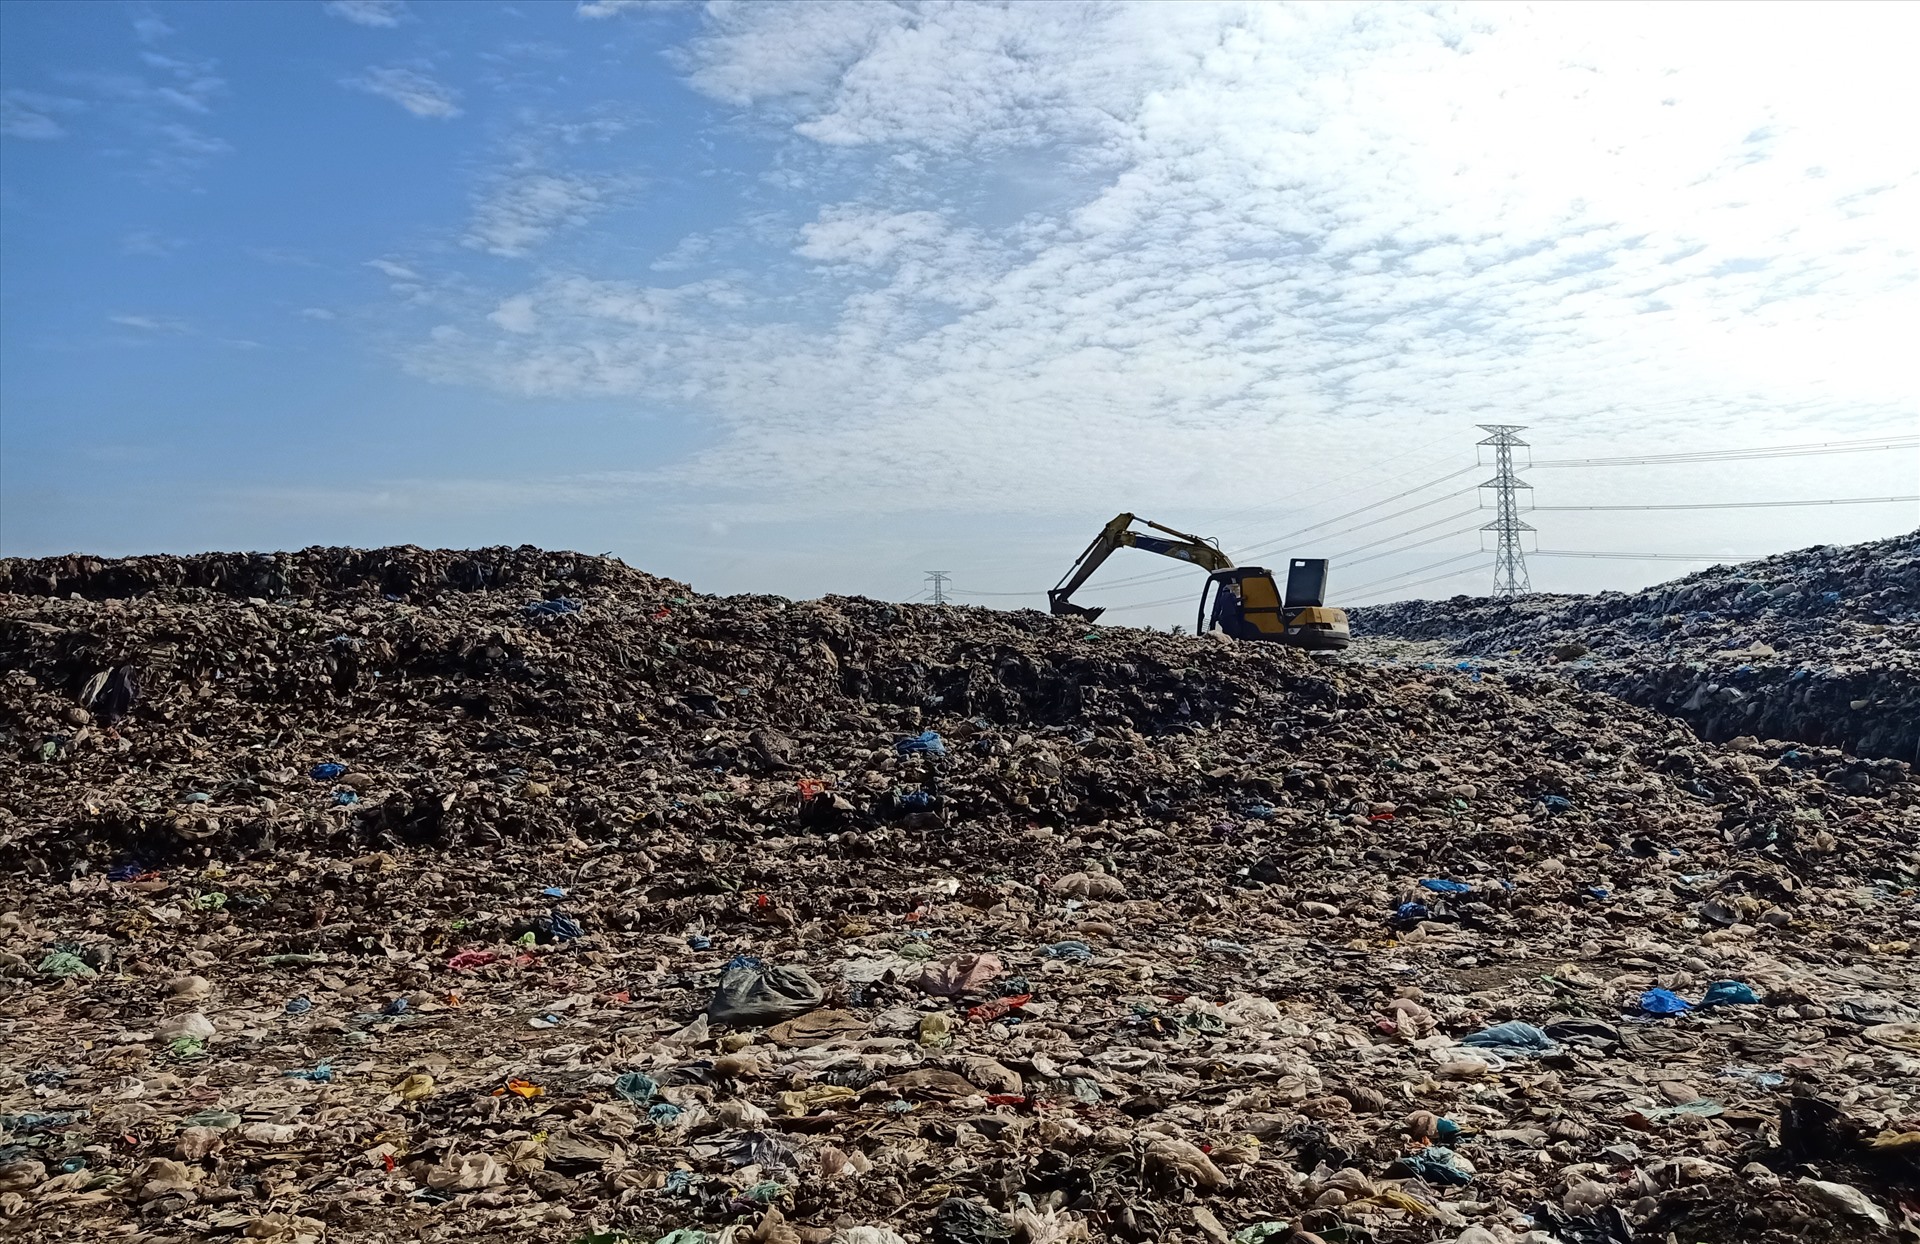 Lượng rác tập kết ùn ứ tại xung quanh khu vực Nhà máy xử lý chất thải rắn sinh hoạt  tỉnh Trà Vinh ngày càng lớn, gây ô nhiễm môi trường nghiêm trọng. Ảnh: P.V.